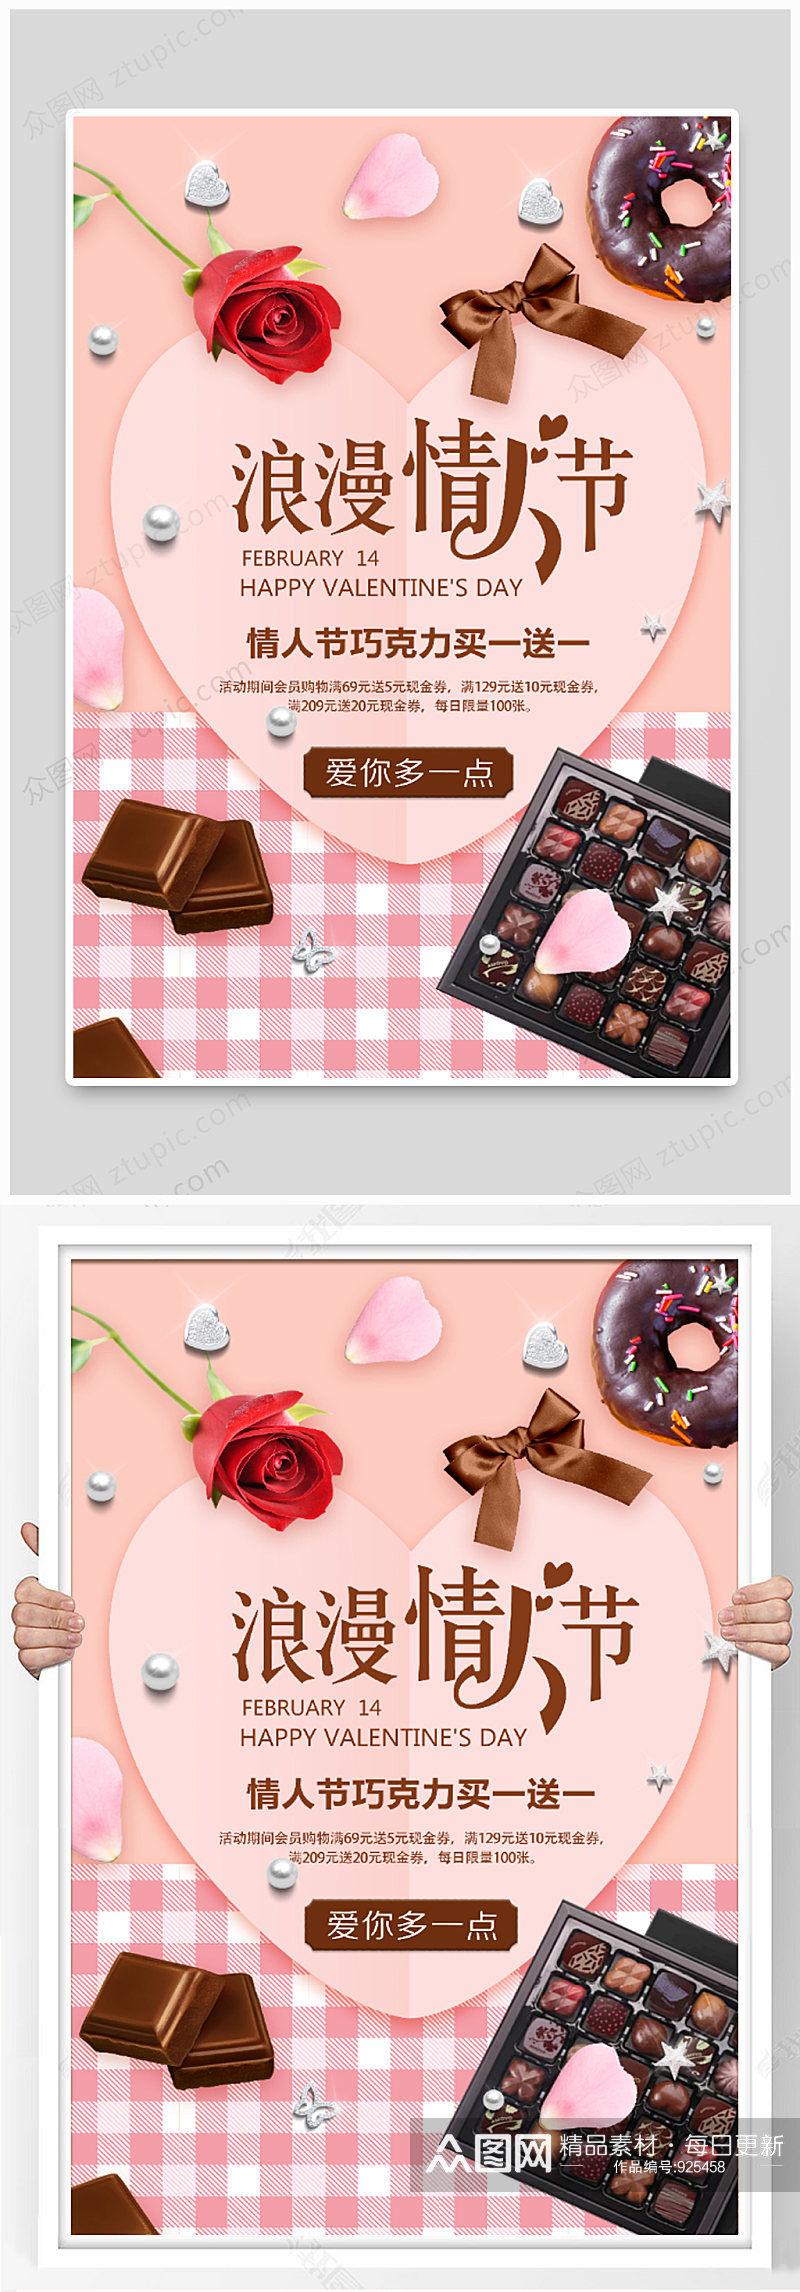 浪漫情人节巧克力促销海报设计素材